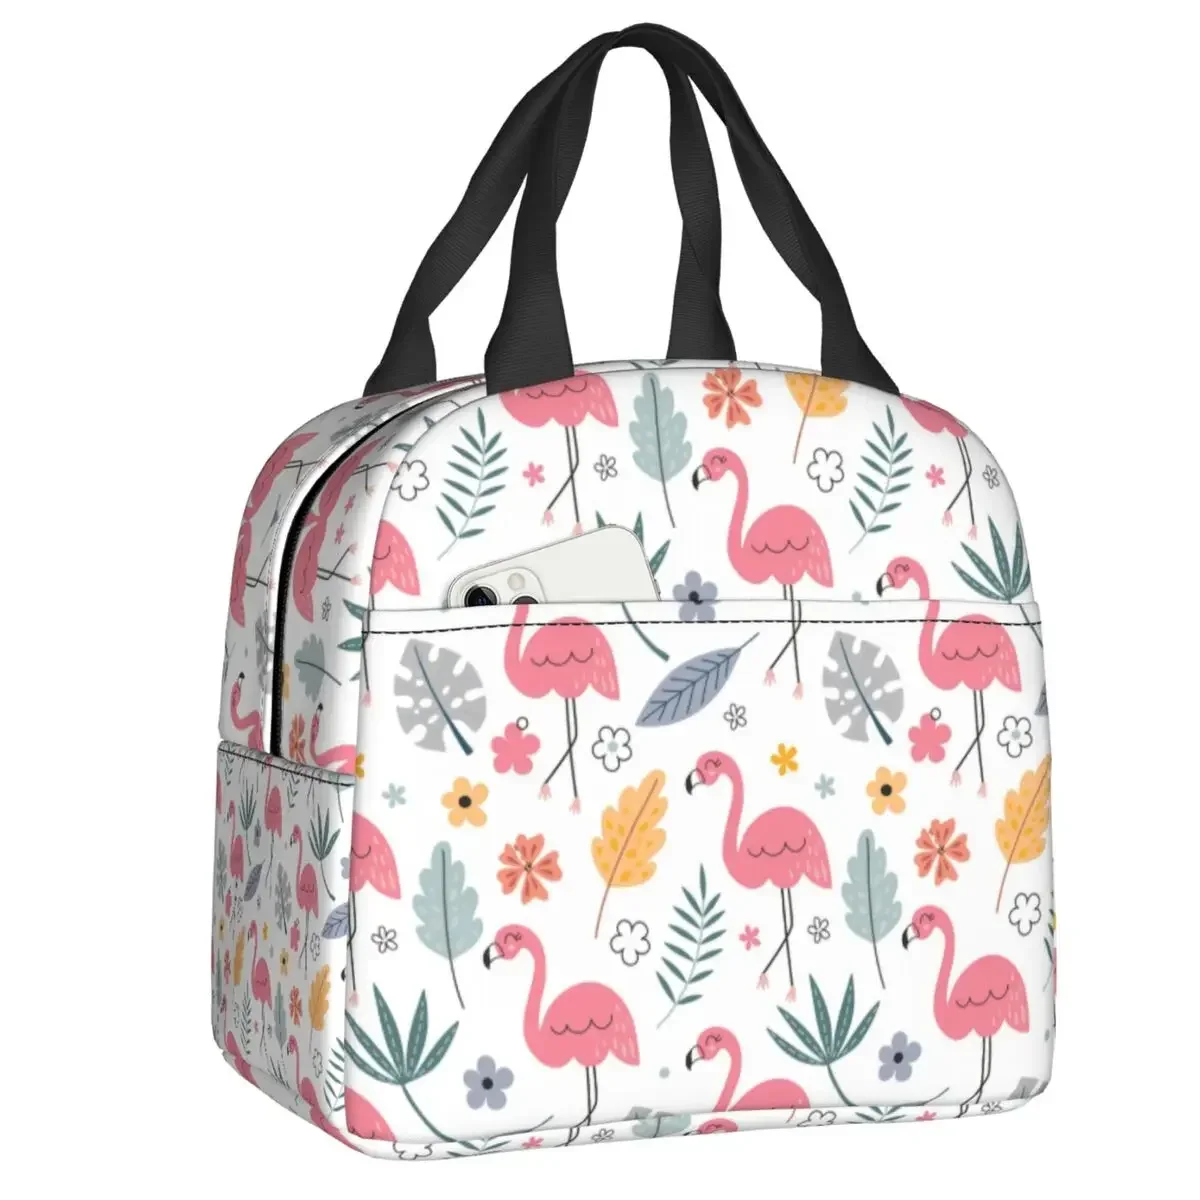 

Милые бесшовные Изолированные сумки для ланча с рисунком фламинго для женщин и мужчин, водонепроницаемая Термосумка для ланча, Офисная сумка для пикника и путешествий